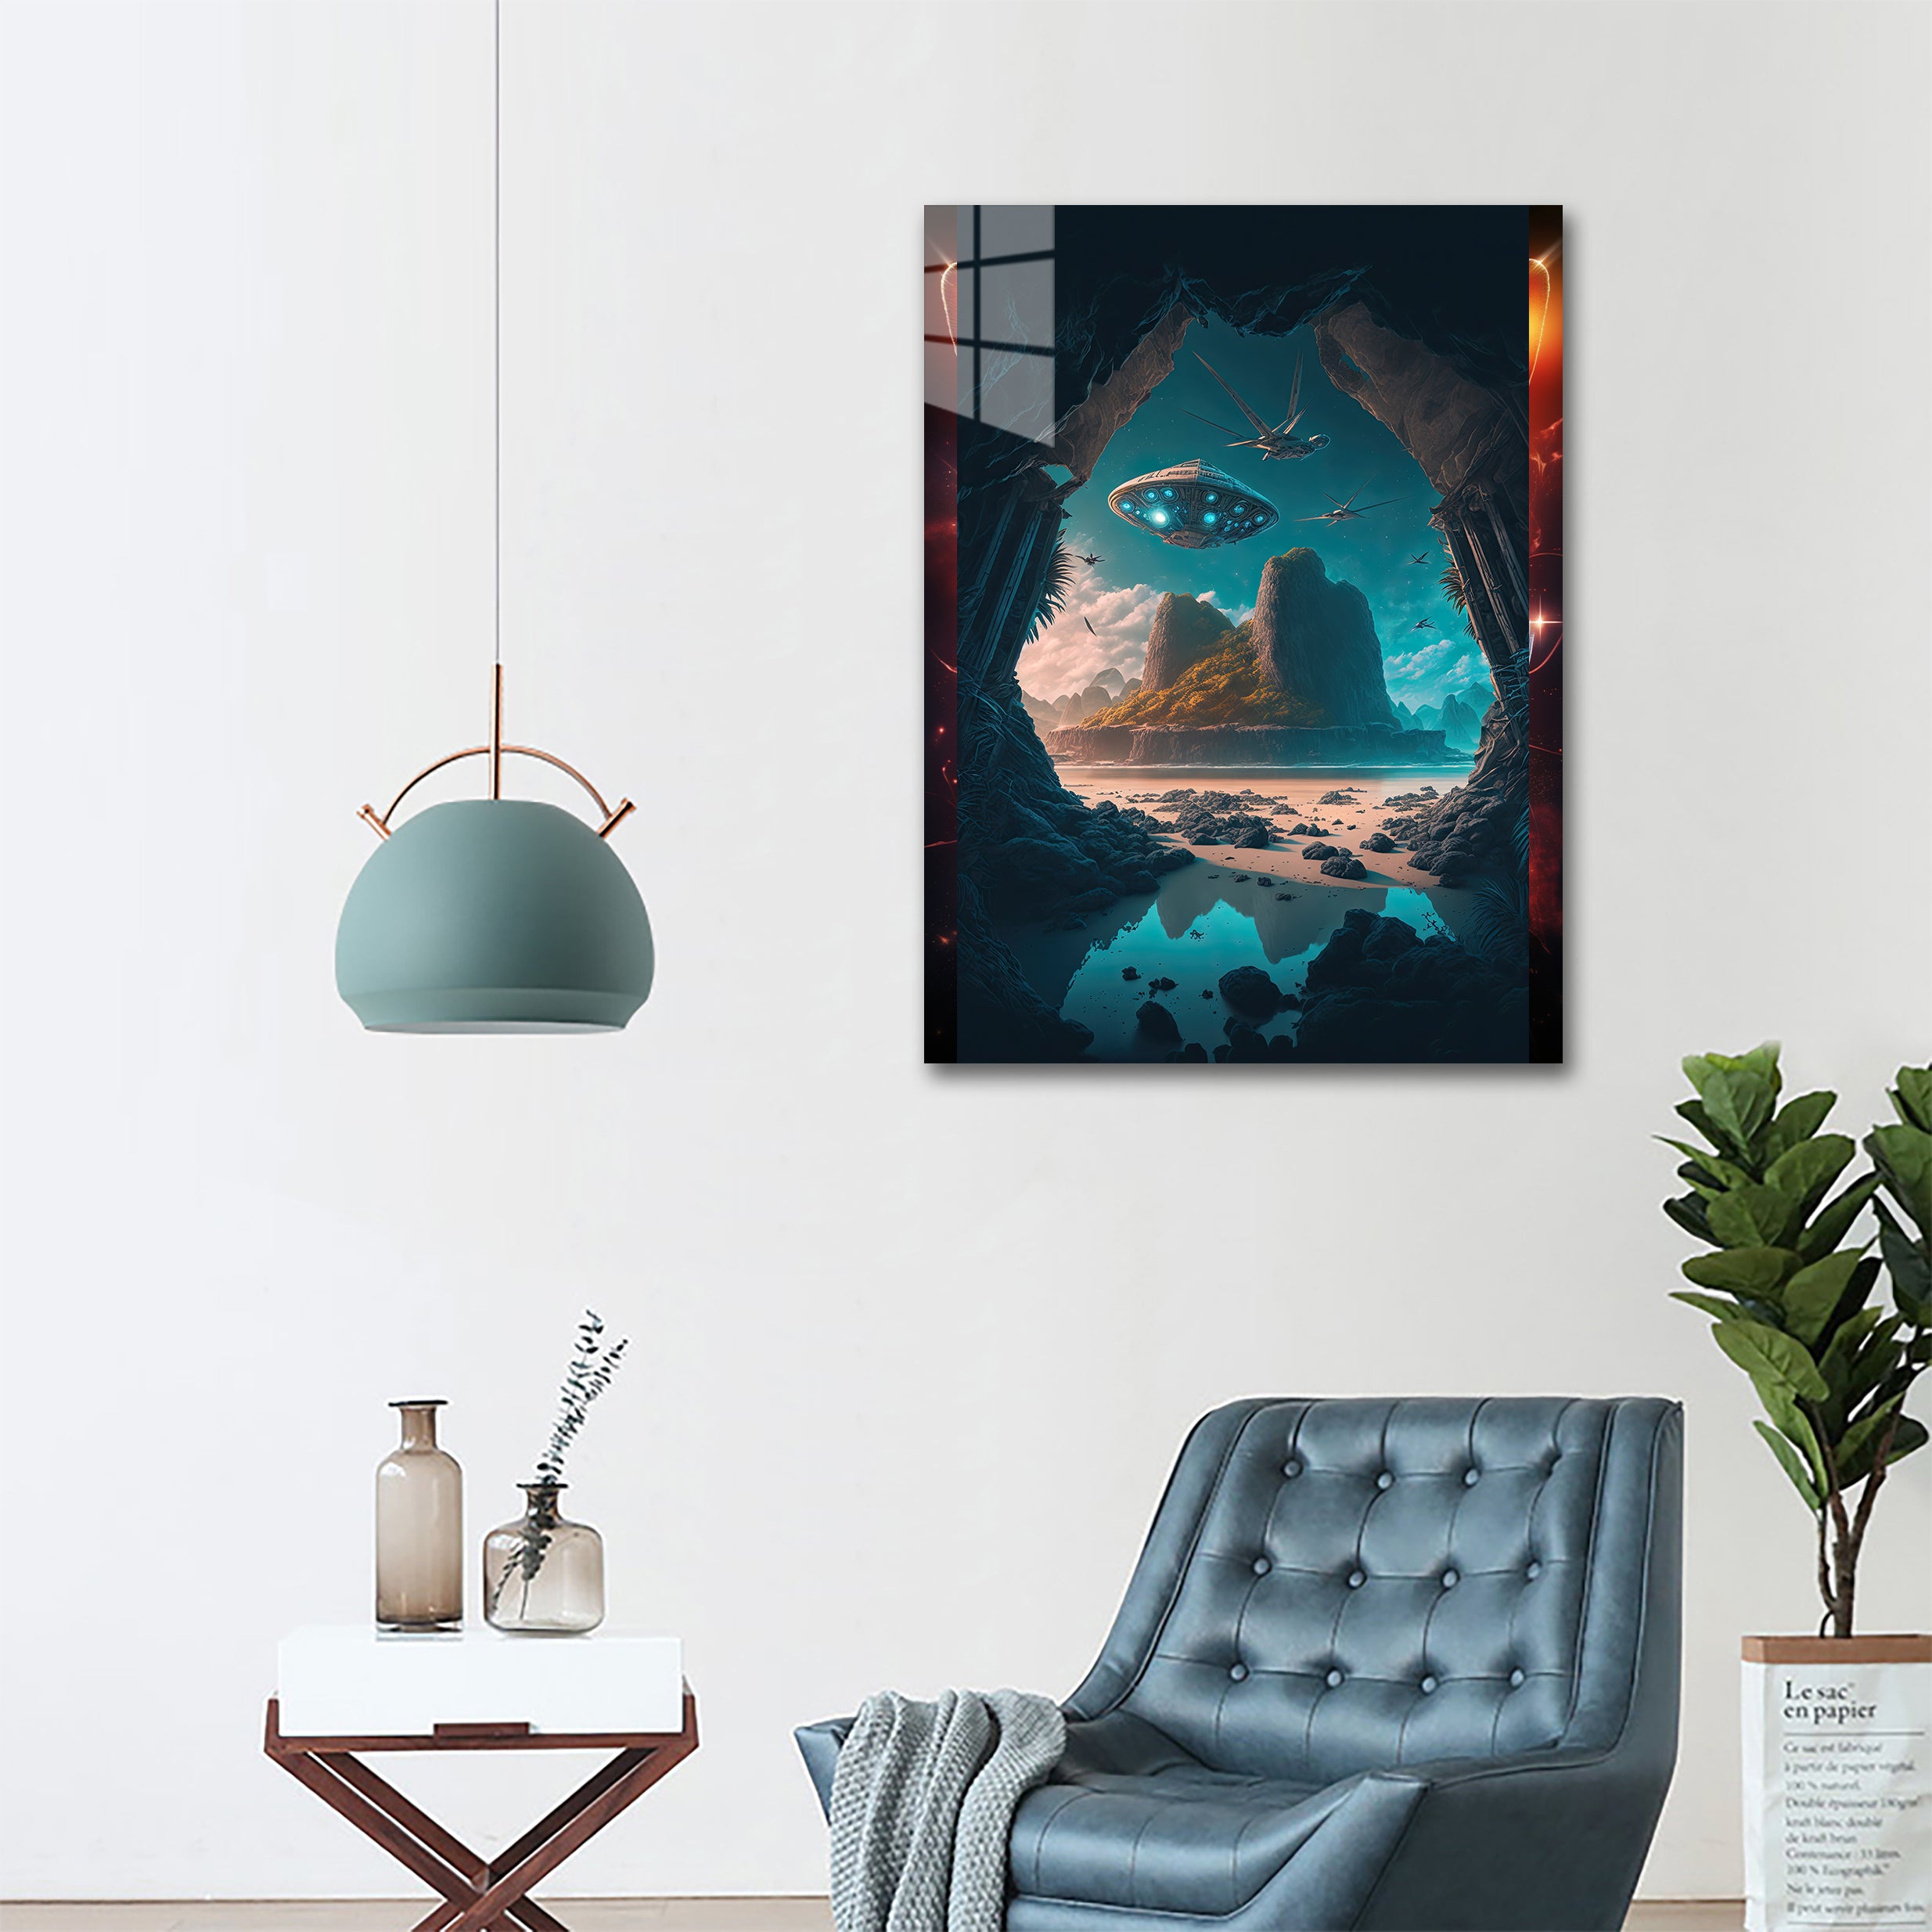 Interstellar Soar-designed by @Da vinci Ai Art